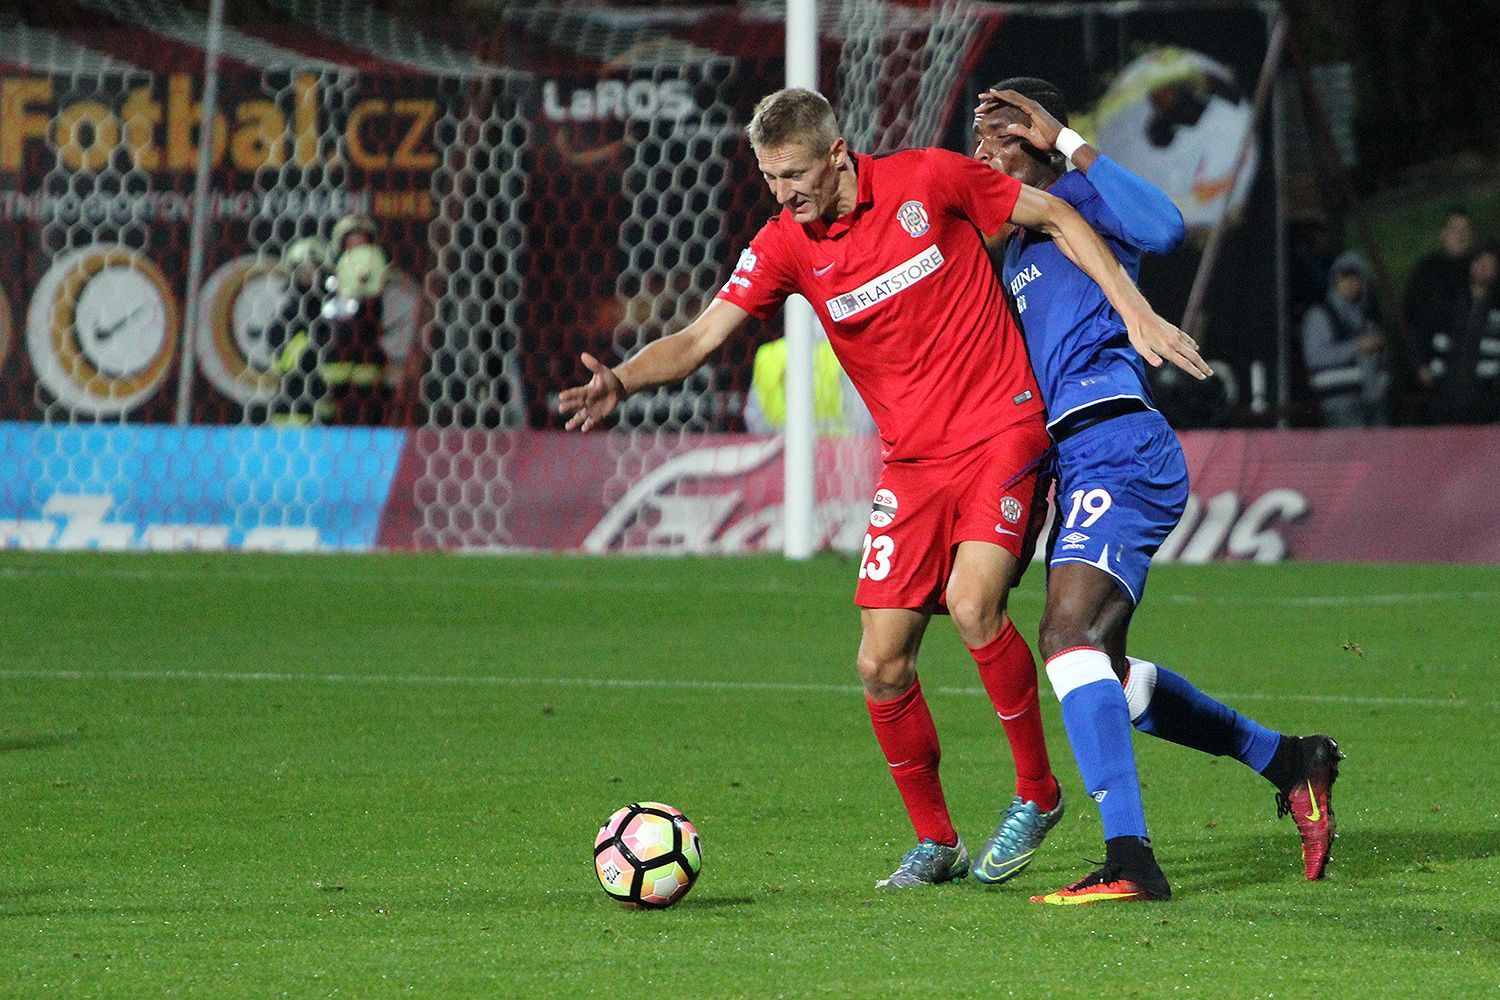 epojisteni.cz liga: Brno - Slavia: Michal Škoda, Simon Deli